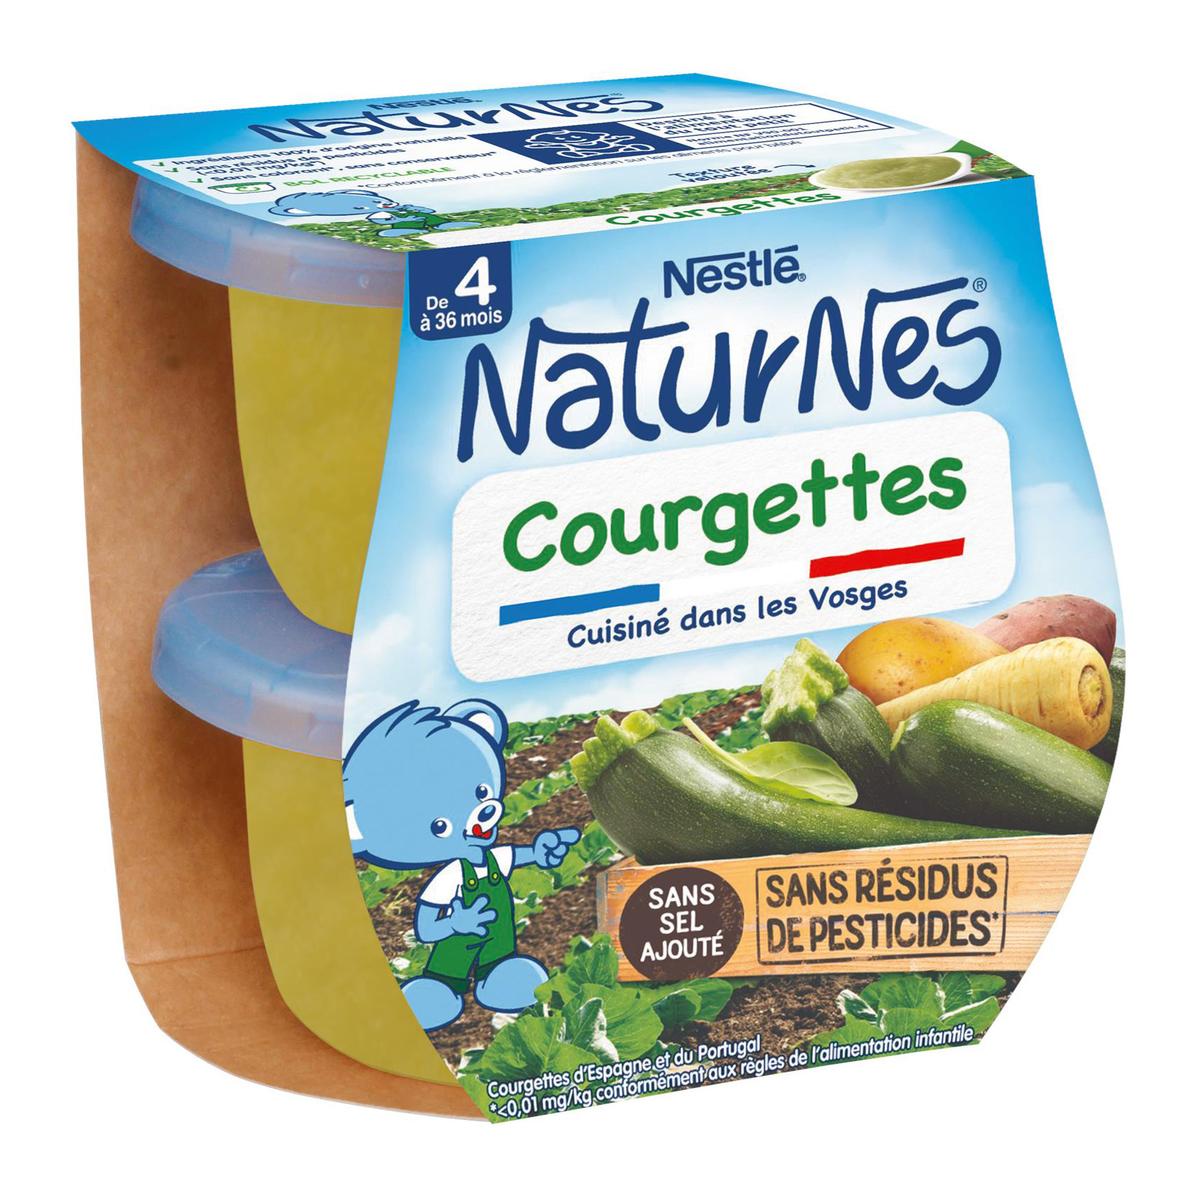 Achat / Vente Nestlé - Naturnes Courgettes Bol Bébé Dès 4 mois, 2x130g